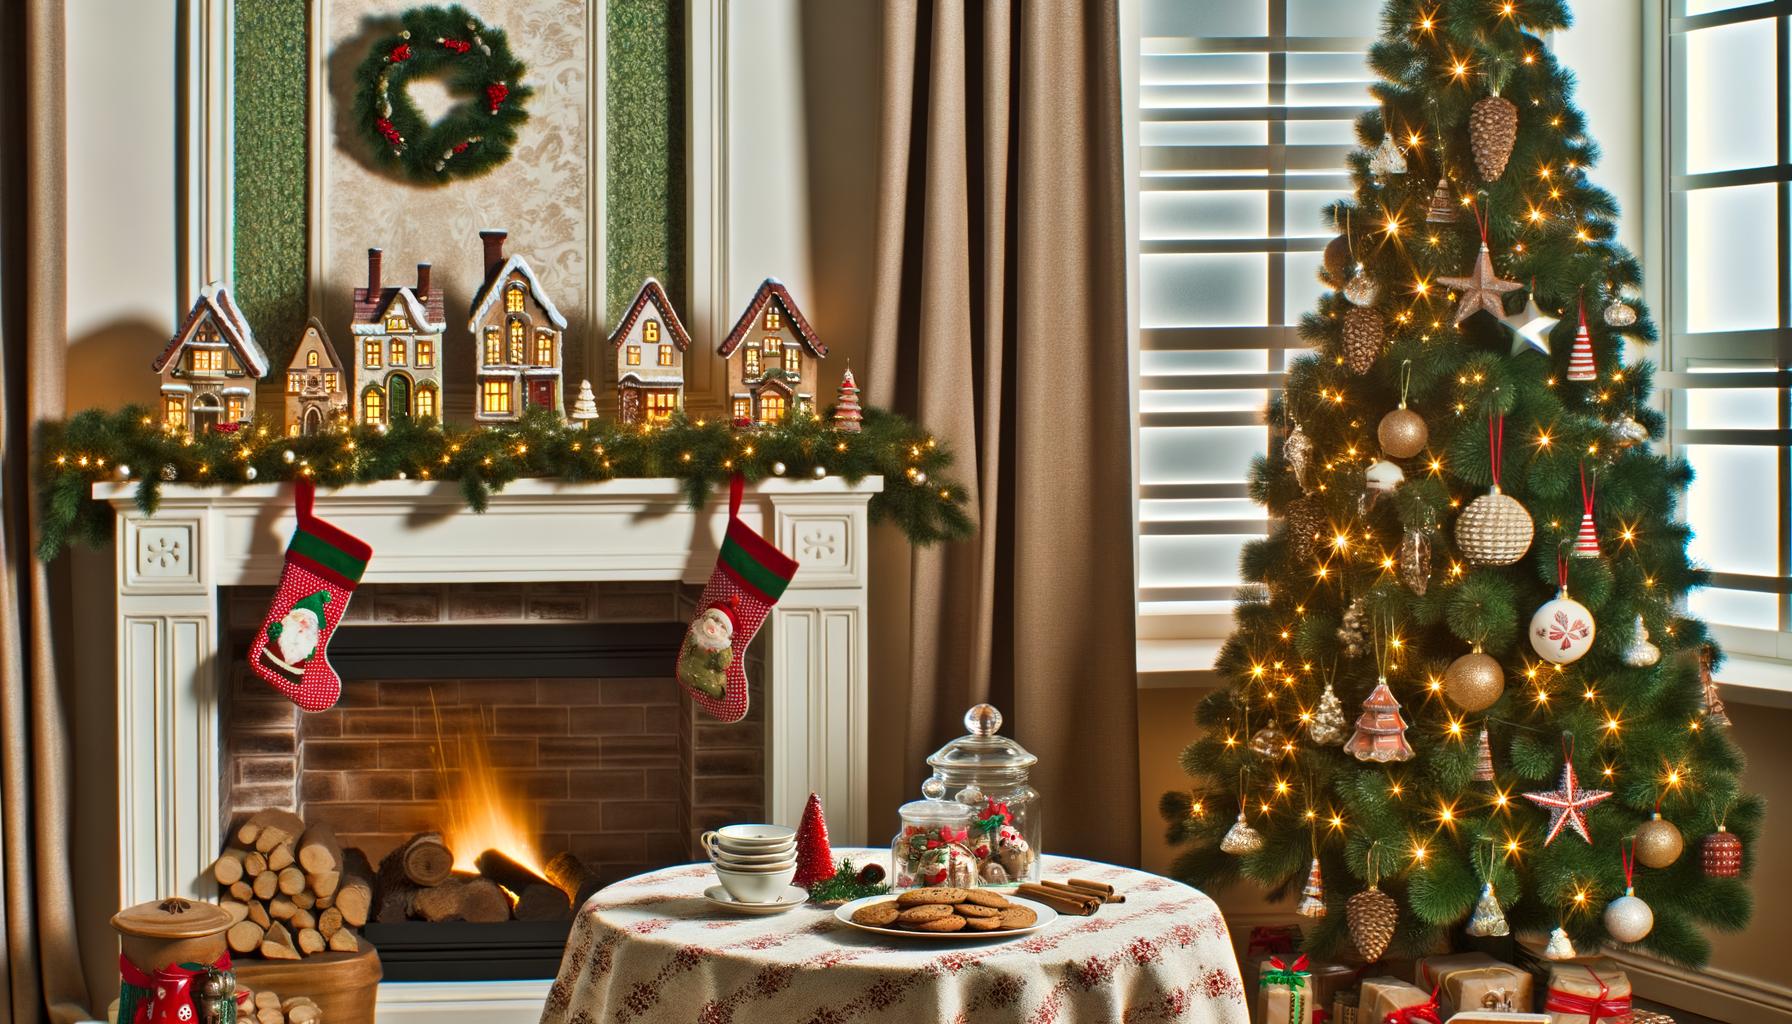 1. Astuces de décoration de Noël pour un intérieur chaleureux et respectueux du voisinage